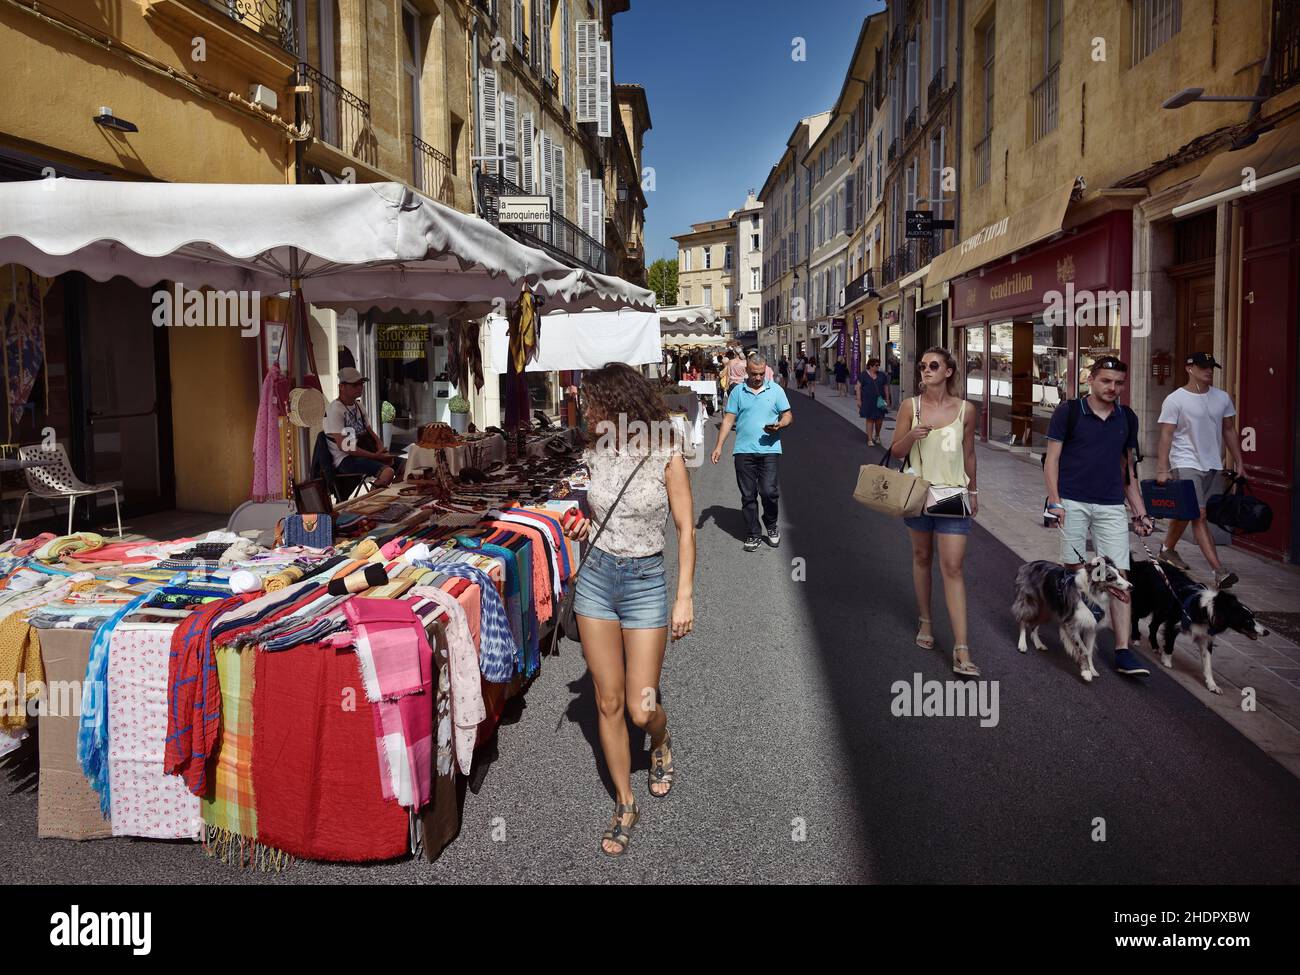 Street market at Aix-en-Provence city, commune at Provence-Alpes-Côte d'Azur, Provence, South of France. Aix, Ais de Provença. Stock Photo